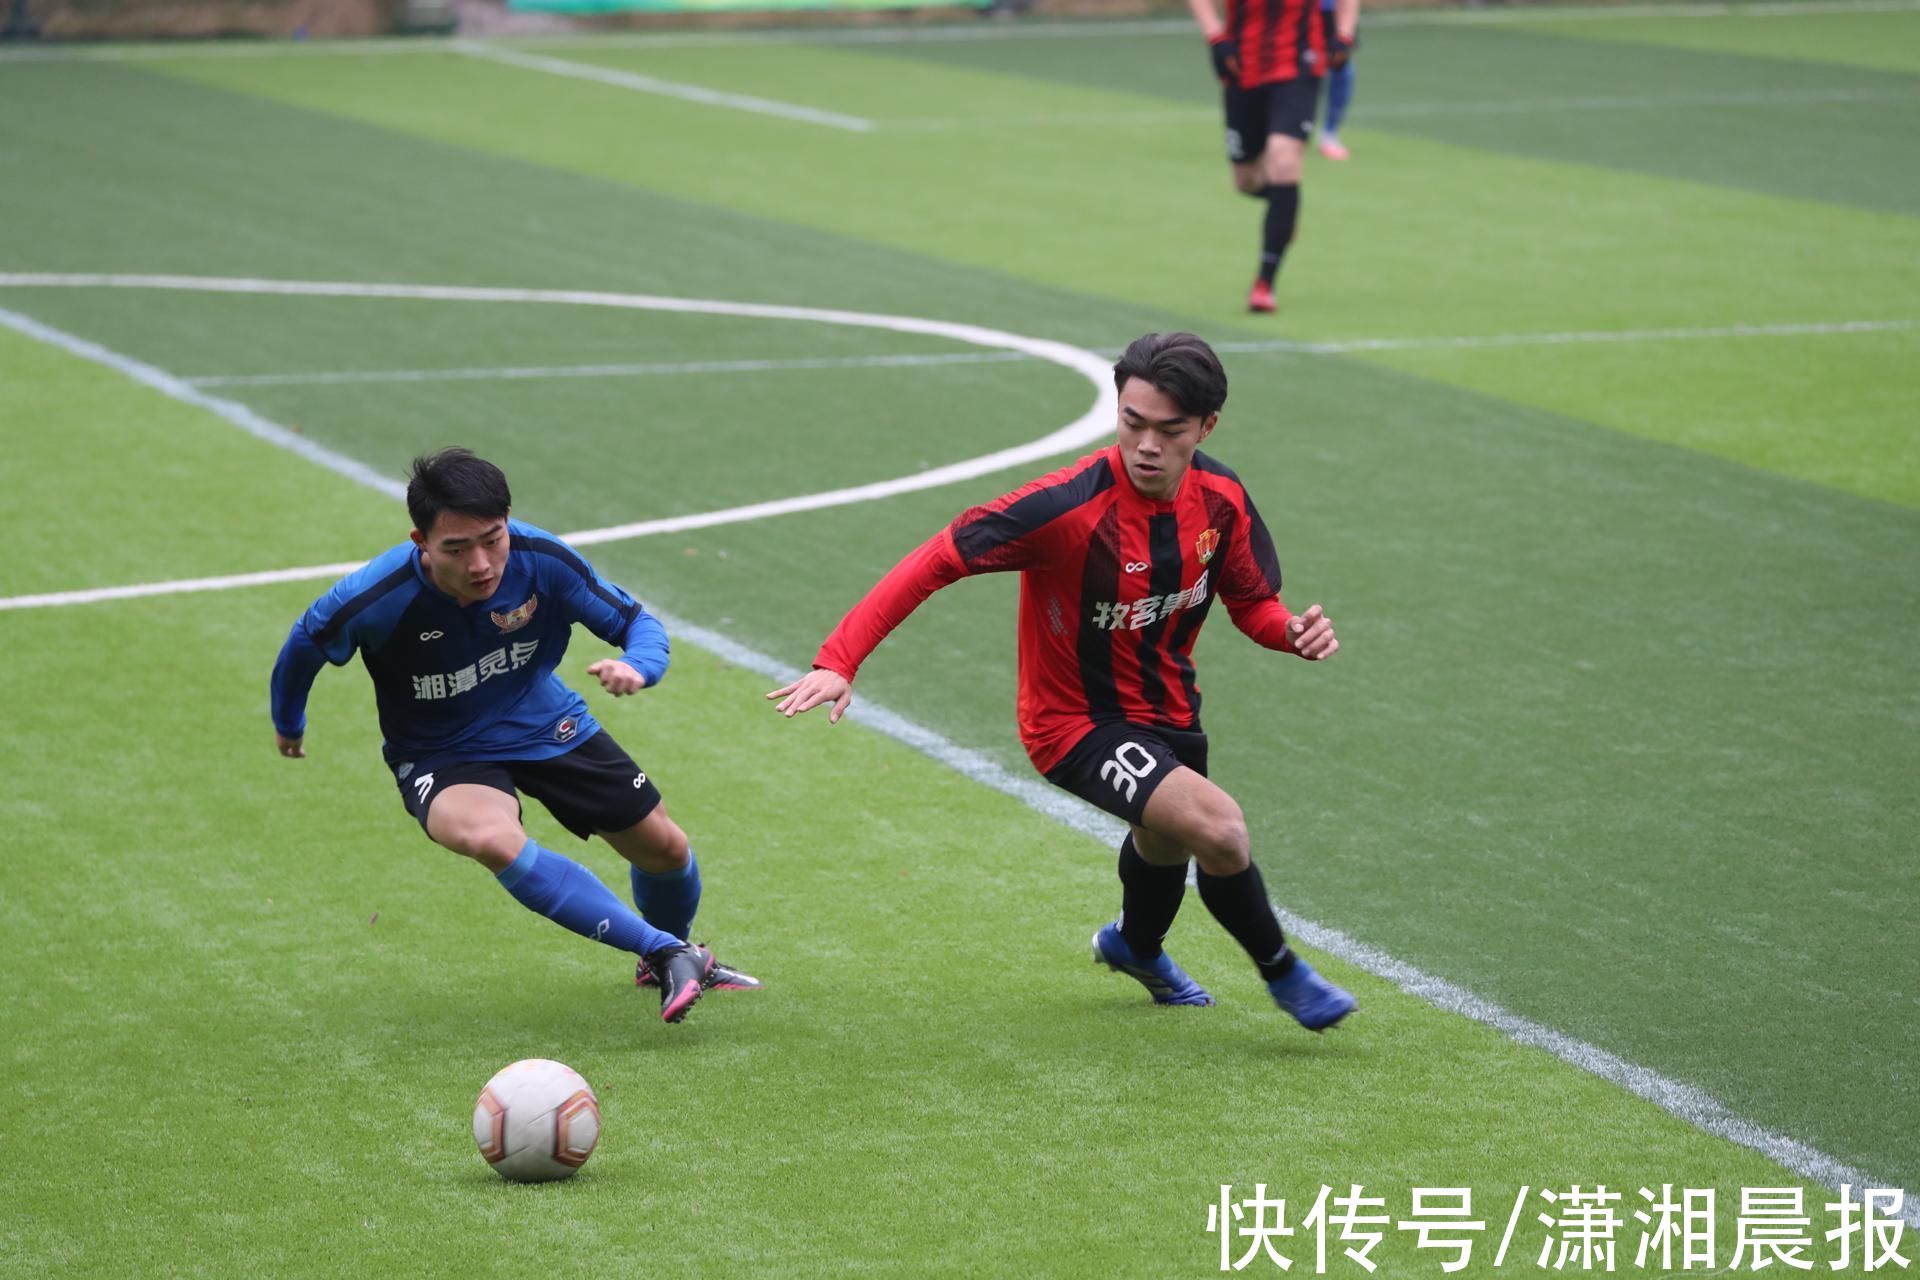 湘潭|2021湖南省大众足球赛暨湘超联赛落幕